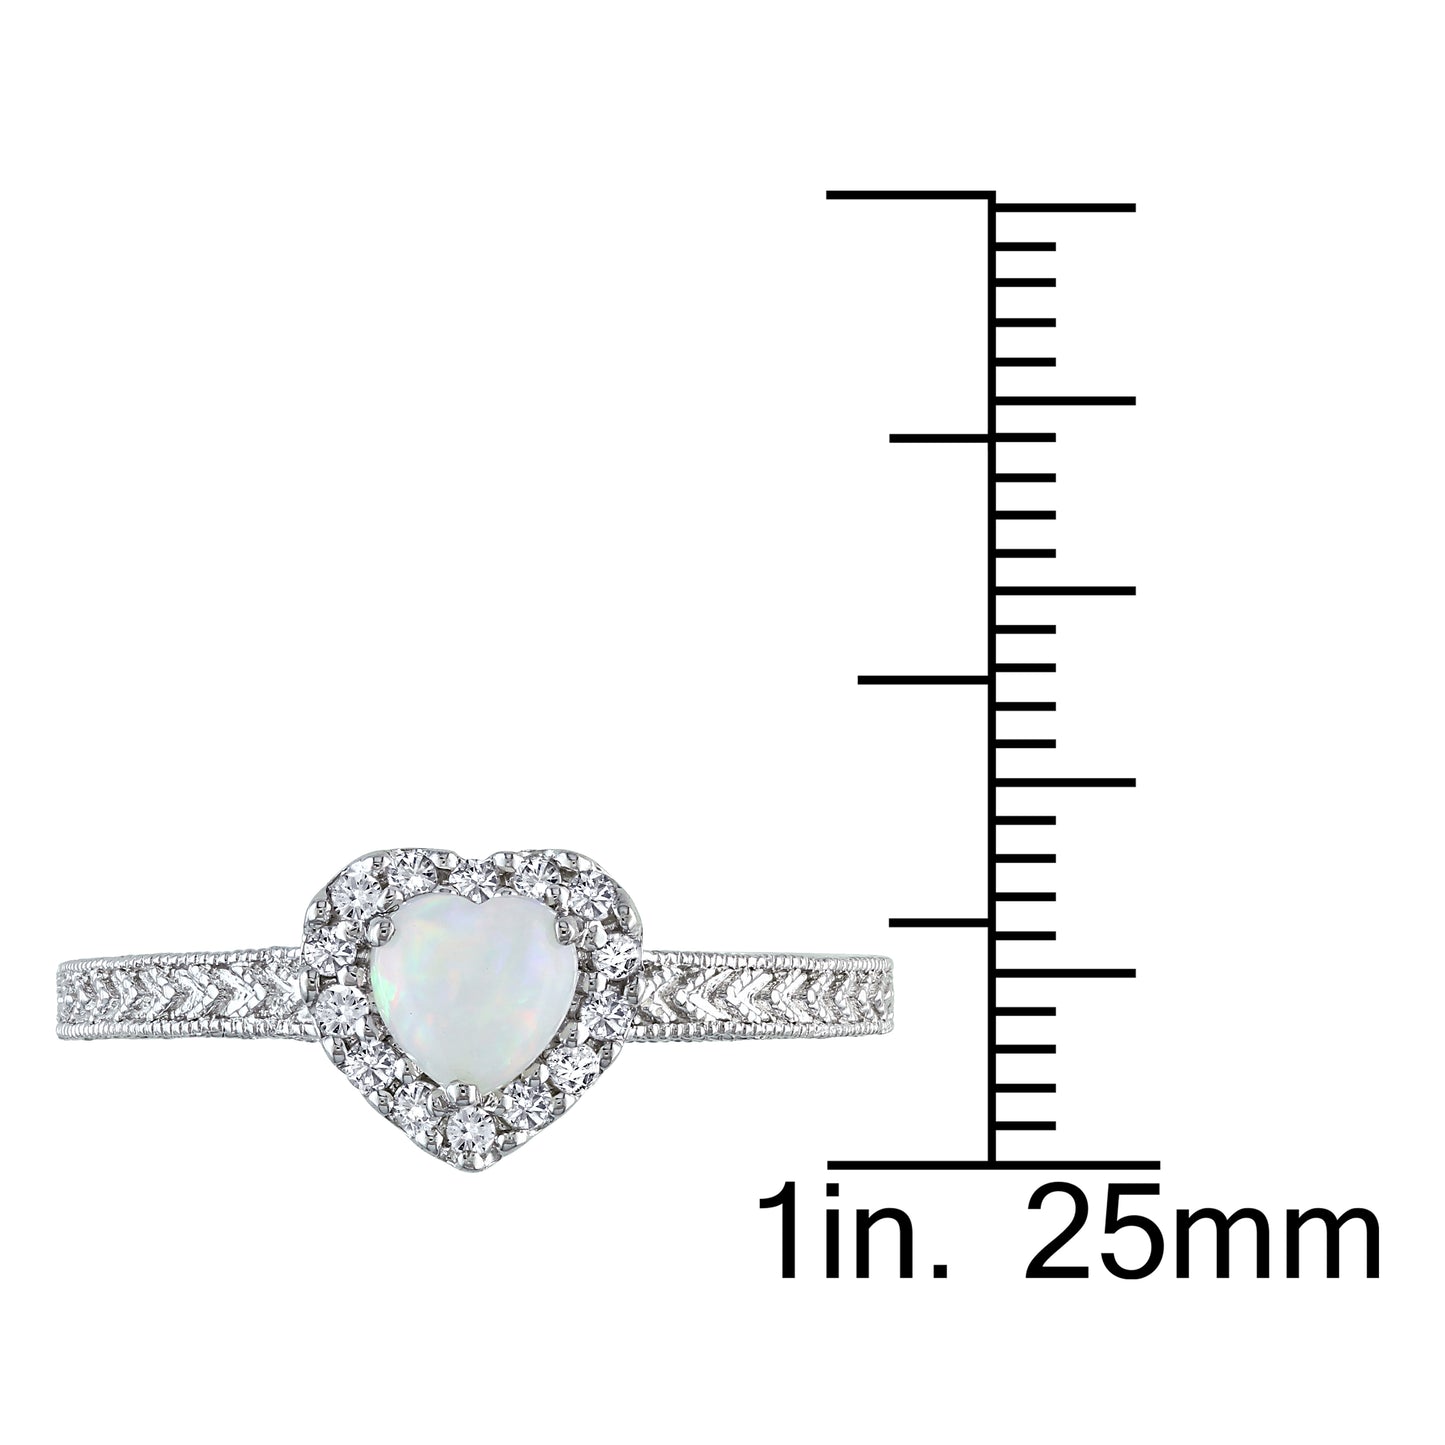 Heart Opal & Diamond Ring in Sterling Silver